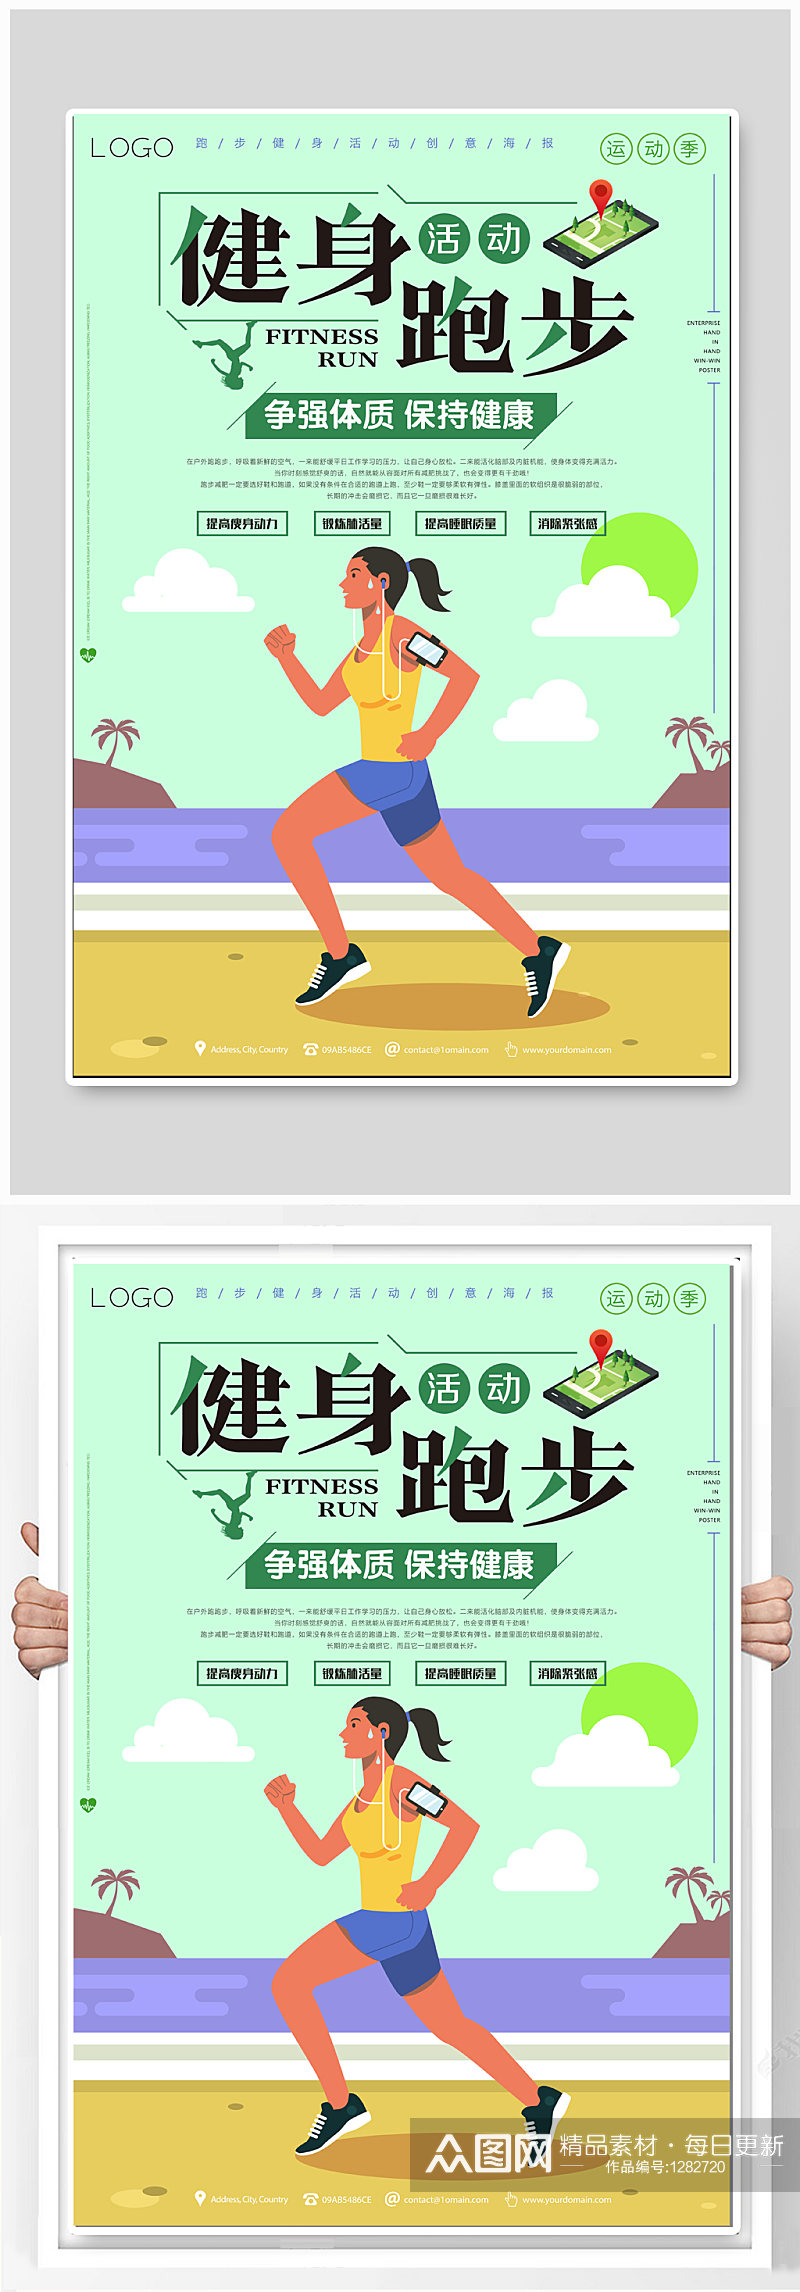 健身跑步体育运动海报素材